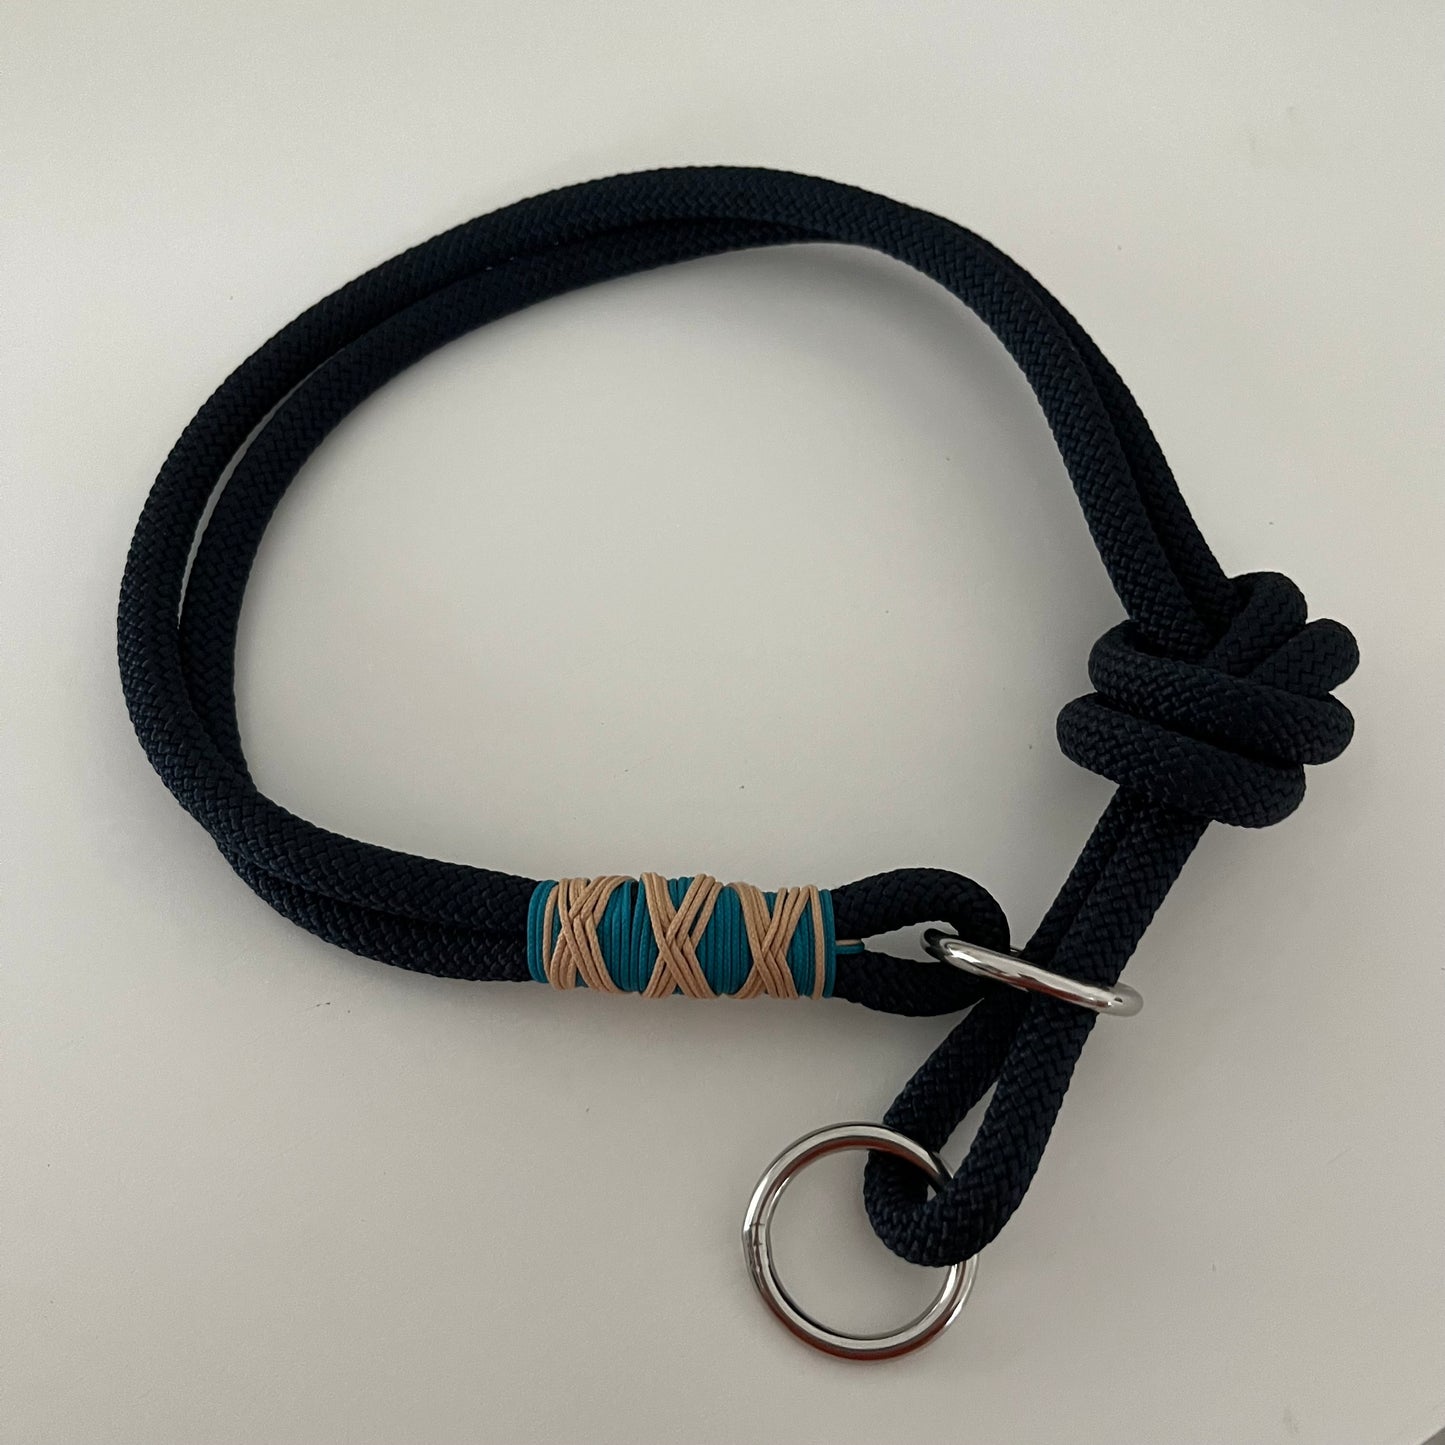 Retrieverhalsband mit Zugstop, tiefseeblau, aqua, sand, Kopfumfang bis 55cm, Größe verstellbar, Einzelstück